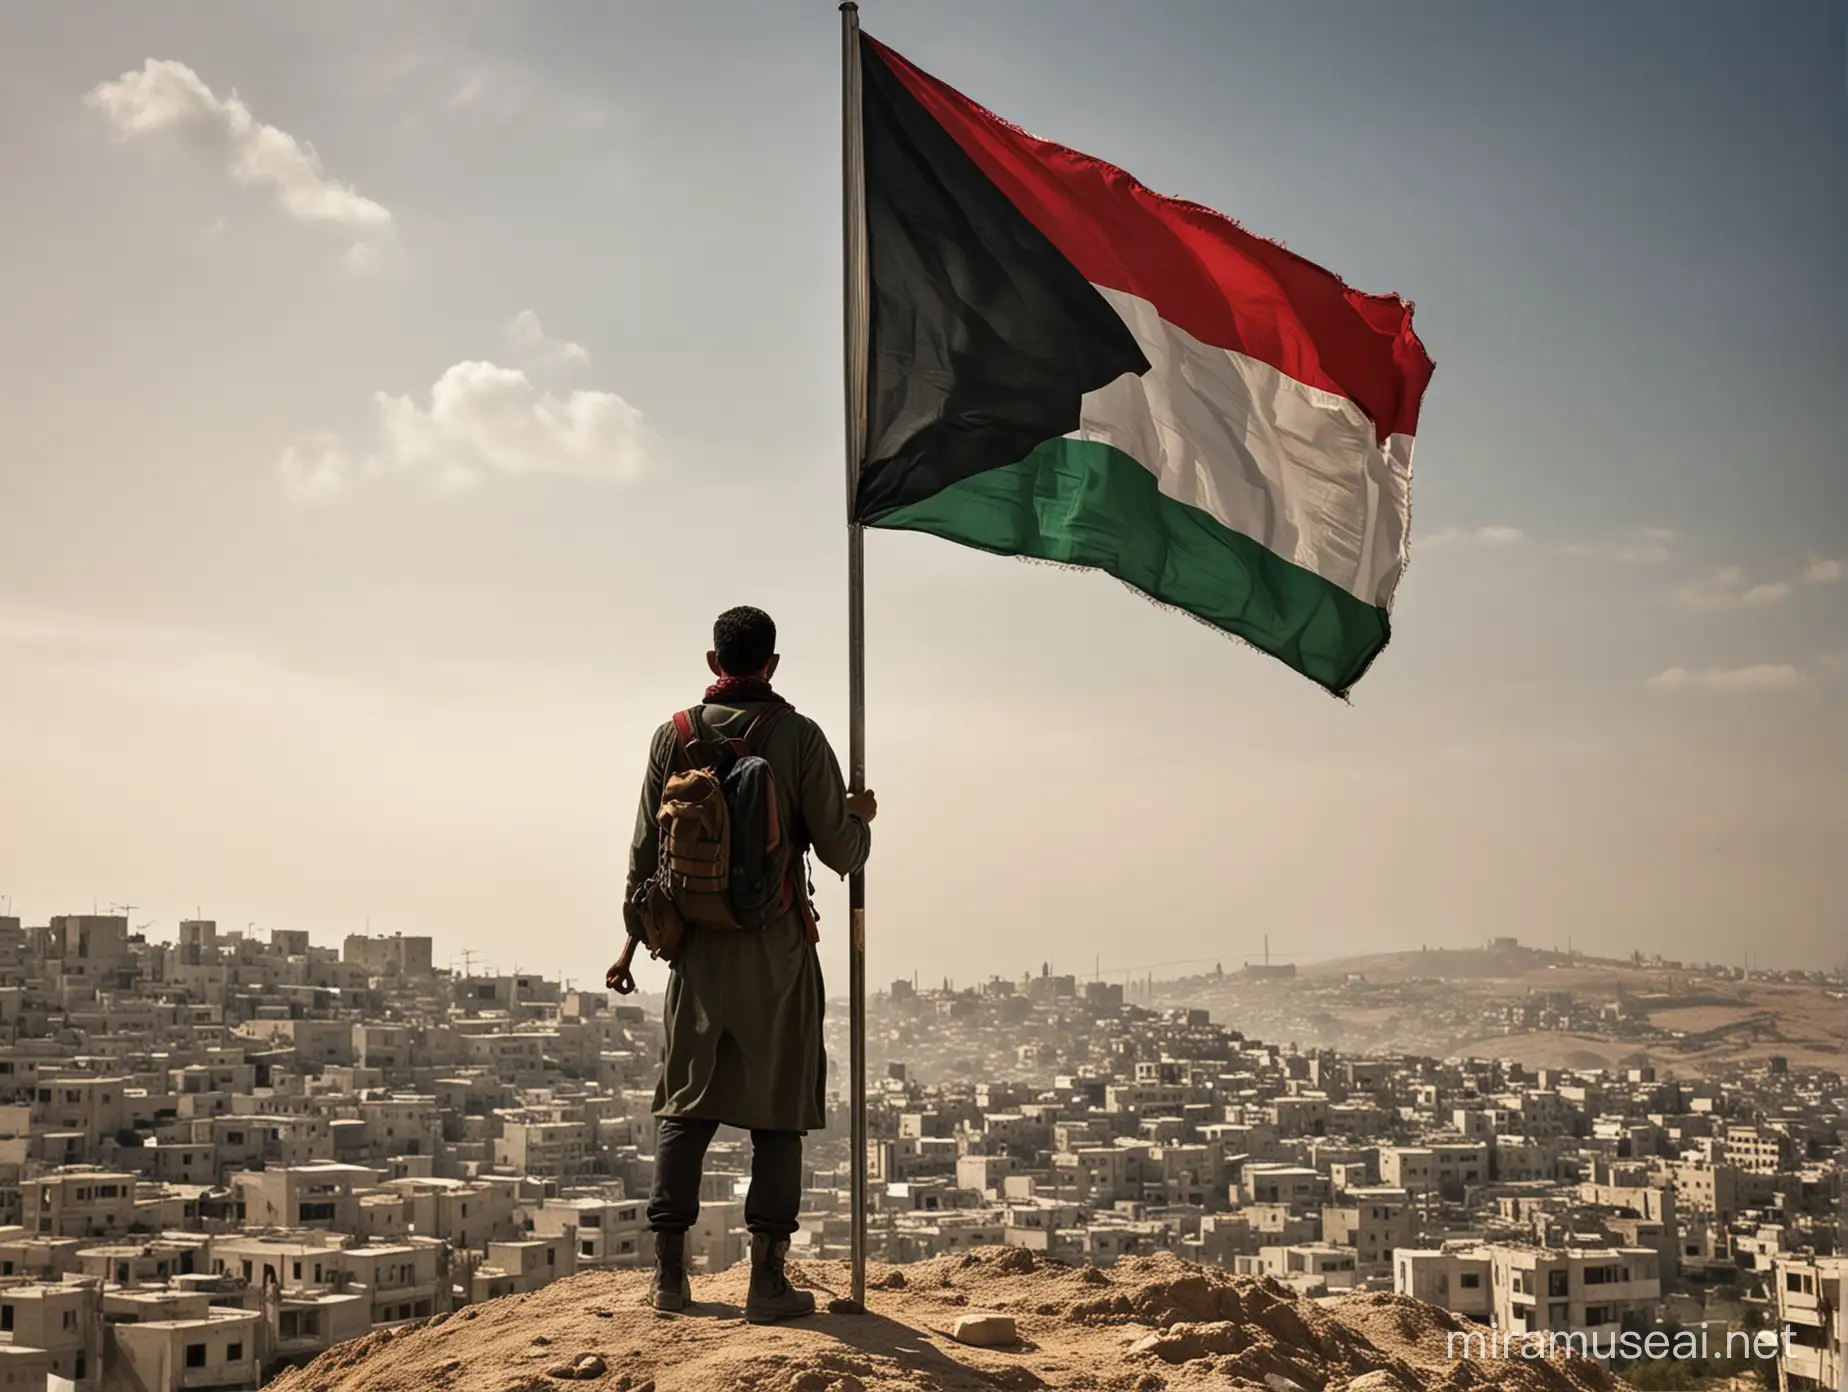 Bu profil fotoğrafı, Filistin'in özgürlük mücadelesine güçlü bir destek göstermektedir. Arka planda, net ve keskin bir şekilde Filistin manzarası ve sembolleri yer almaktadır. Gazete veya dergi resmi, Filistin halkının hikayesini ve mücadelesini temsil ederken, ön planda bayrağın yanında duran güçlü ve uzun boylu bir kişi yer almaktadır. Kişinin imgesi, Filistin halkının kararlılığını ve dayanışmasını vurgulamaktadır. Bayrağın yüksek bir yerden çekilmiş gibi gözükmesi, Filistin halkının yüksekliklerdeki umutlarını yansıtmaktadır."